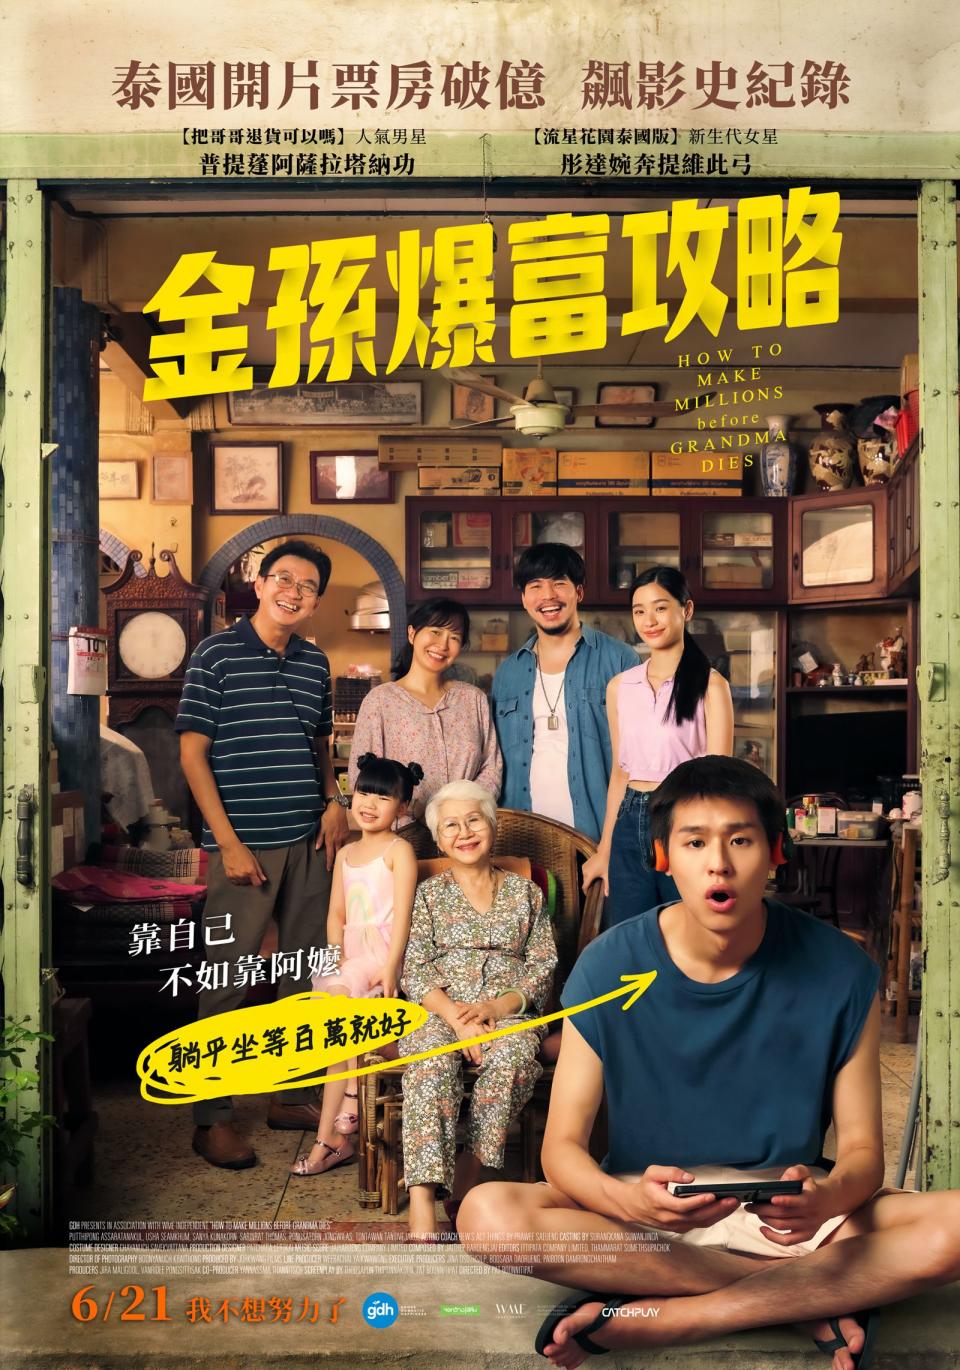 台灣版獨家海報寫上「躺平坐等百萬就好」，直接把主角廢柴性格點出。（Catchplay提供）